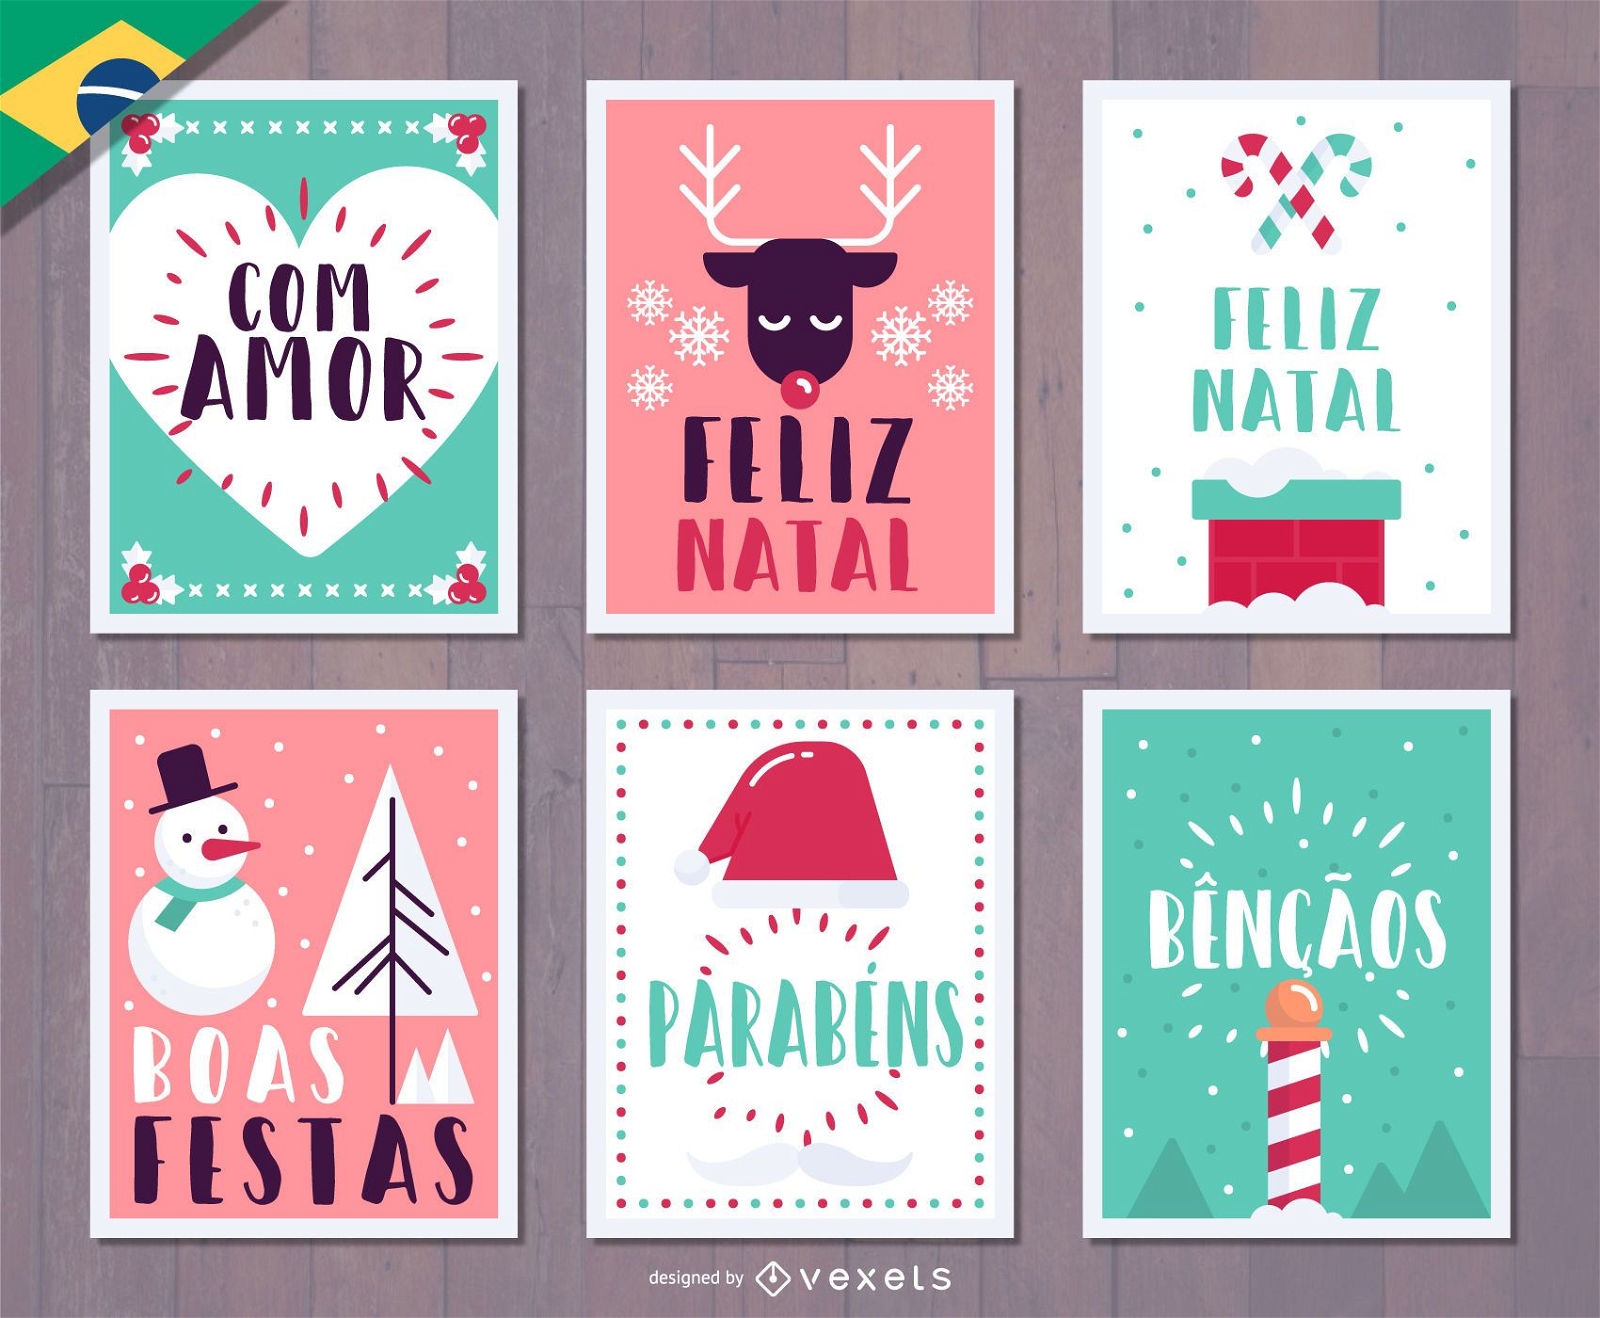 Tarjeta portuguesa de Navidad Feliz Natal